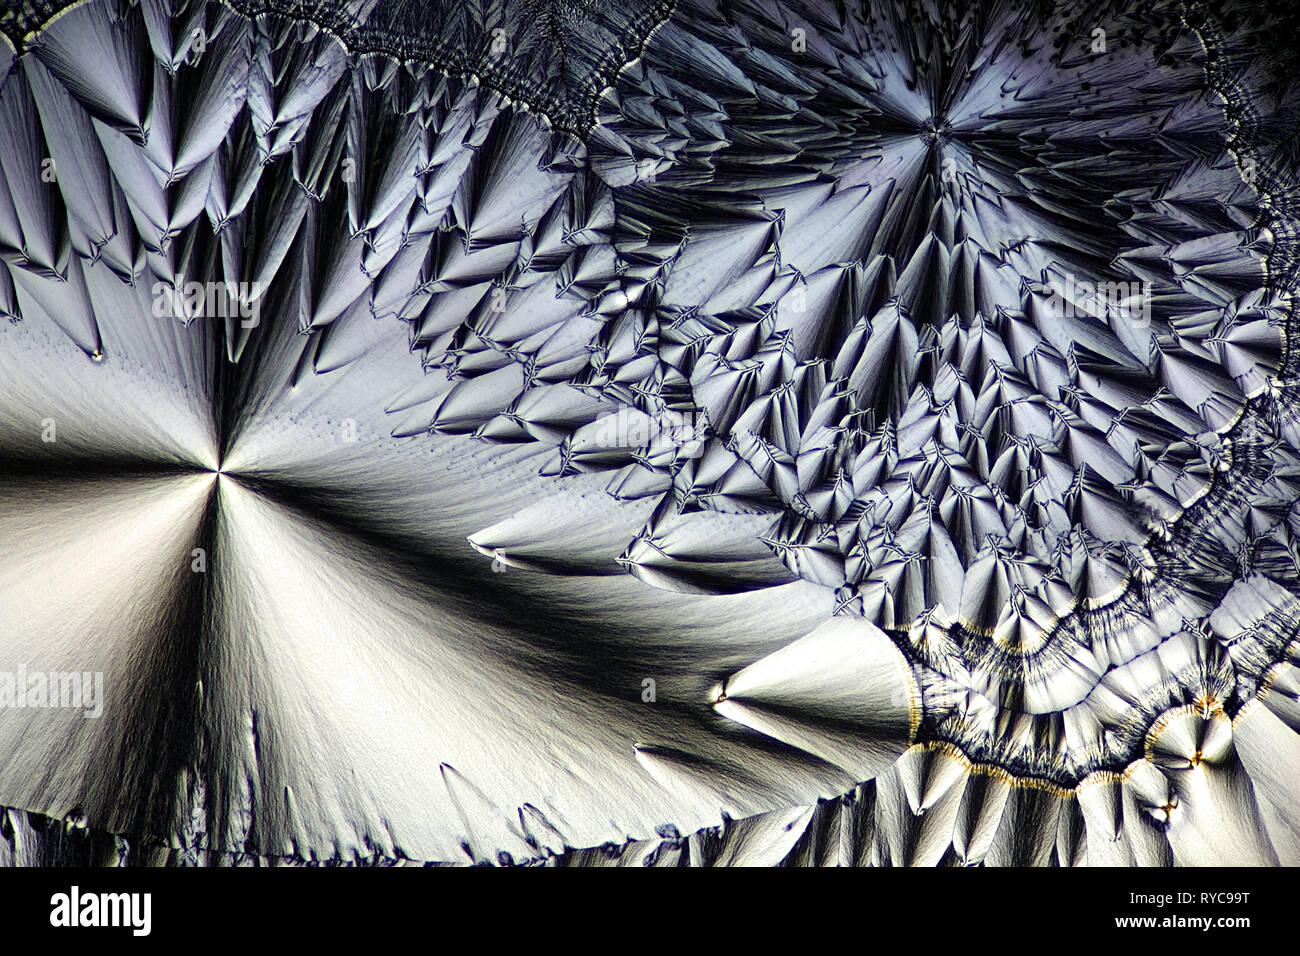 Chemie und Kunst Dies ist Ascorbinsäure, bekannt als Vitamin C, in kristallisierter Form fotografiert bekannt Stockfoto